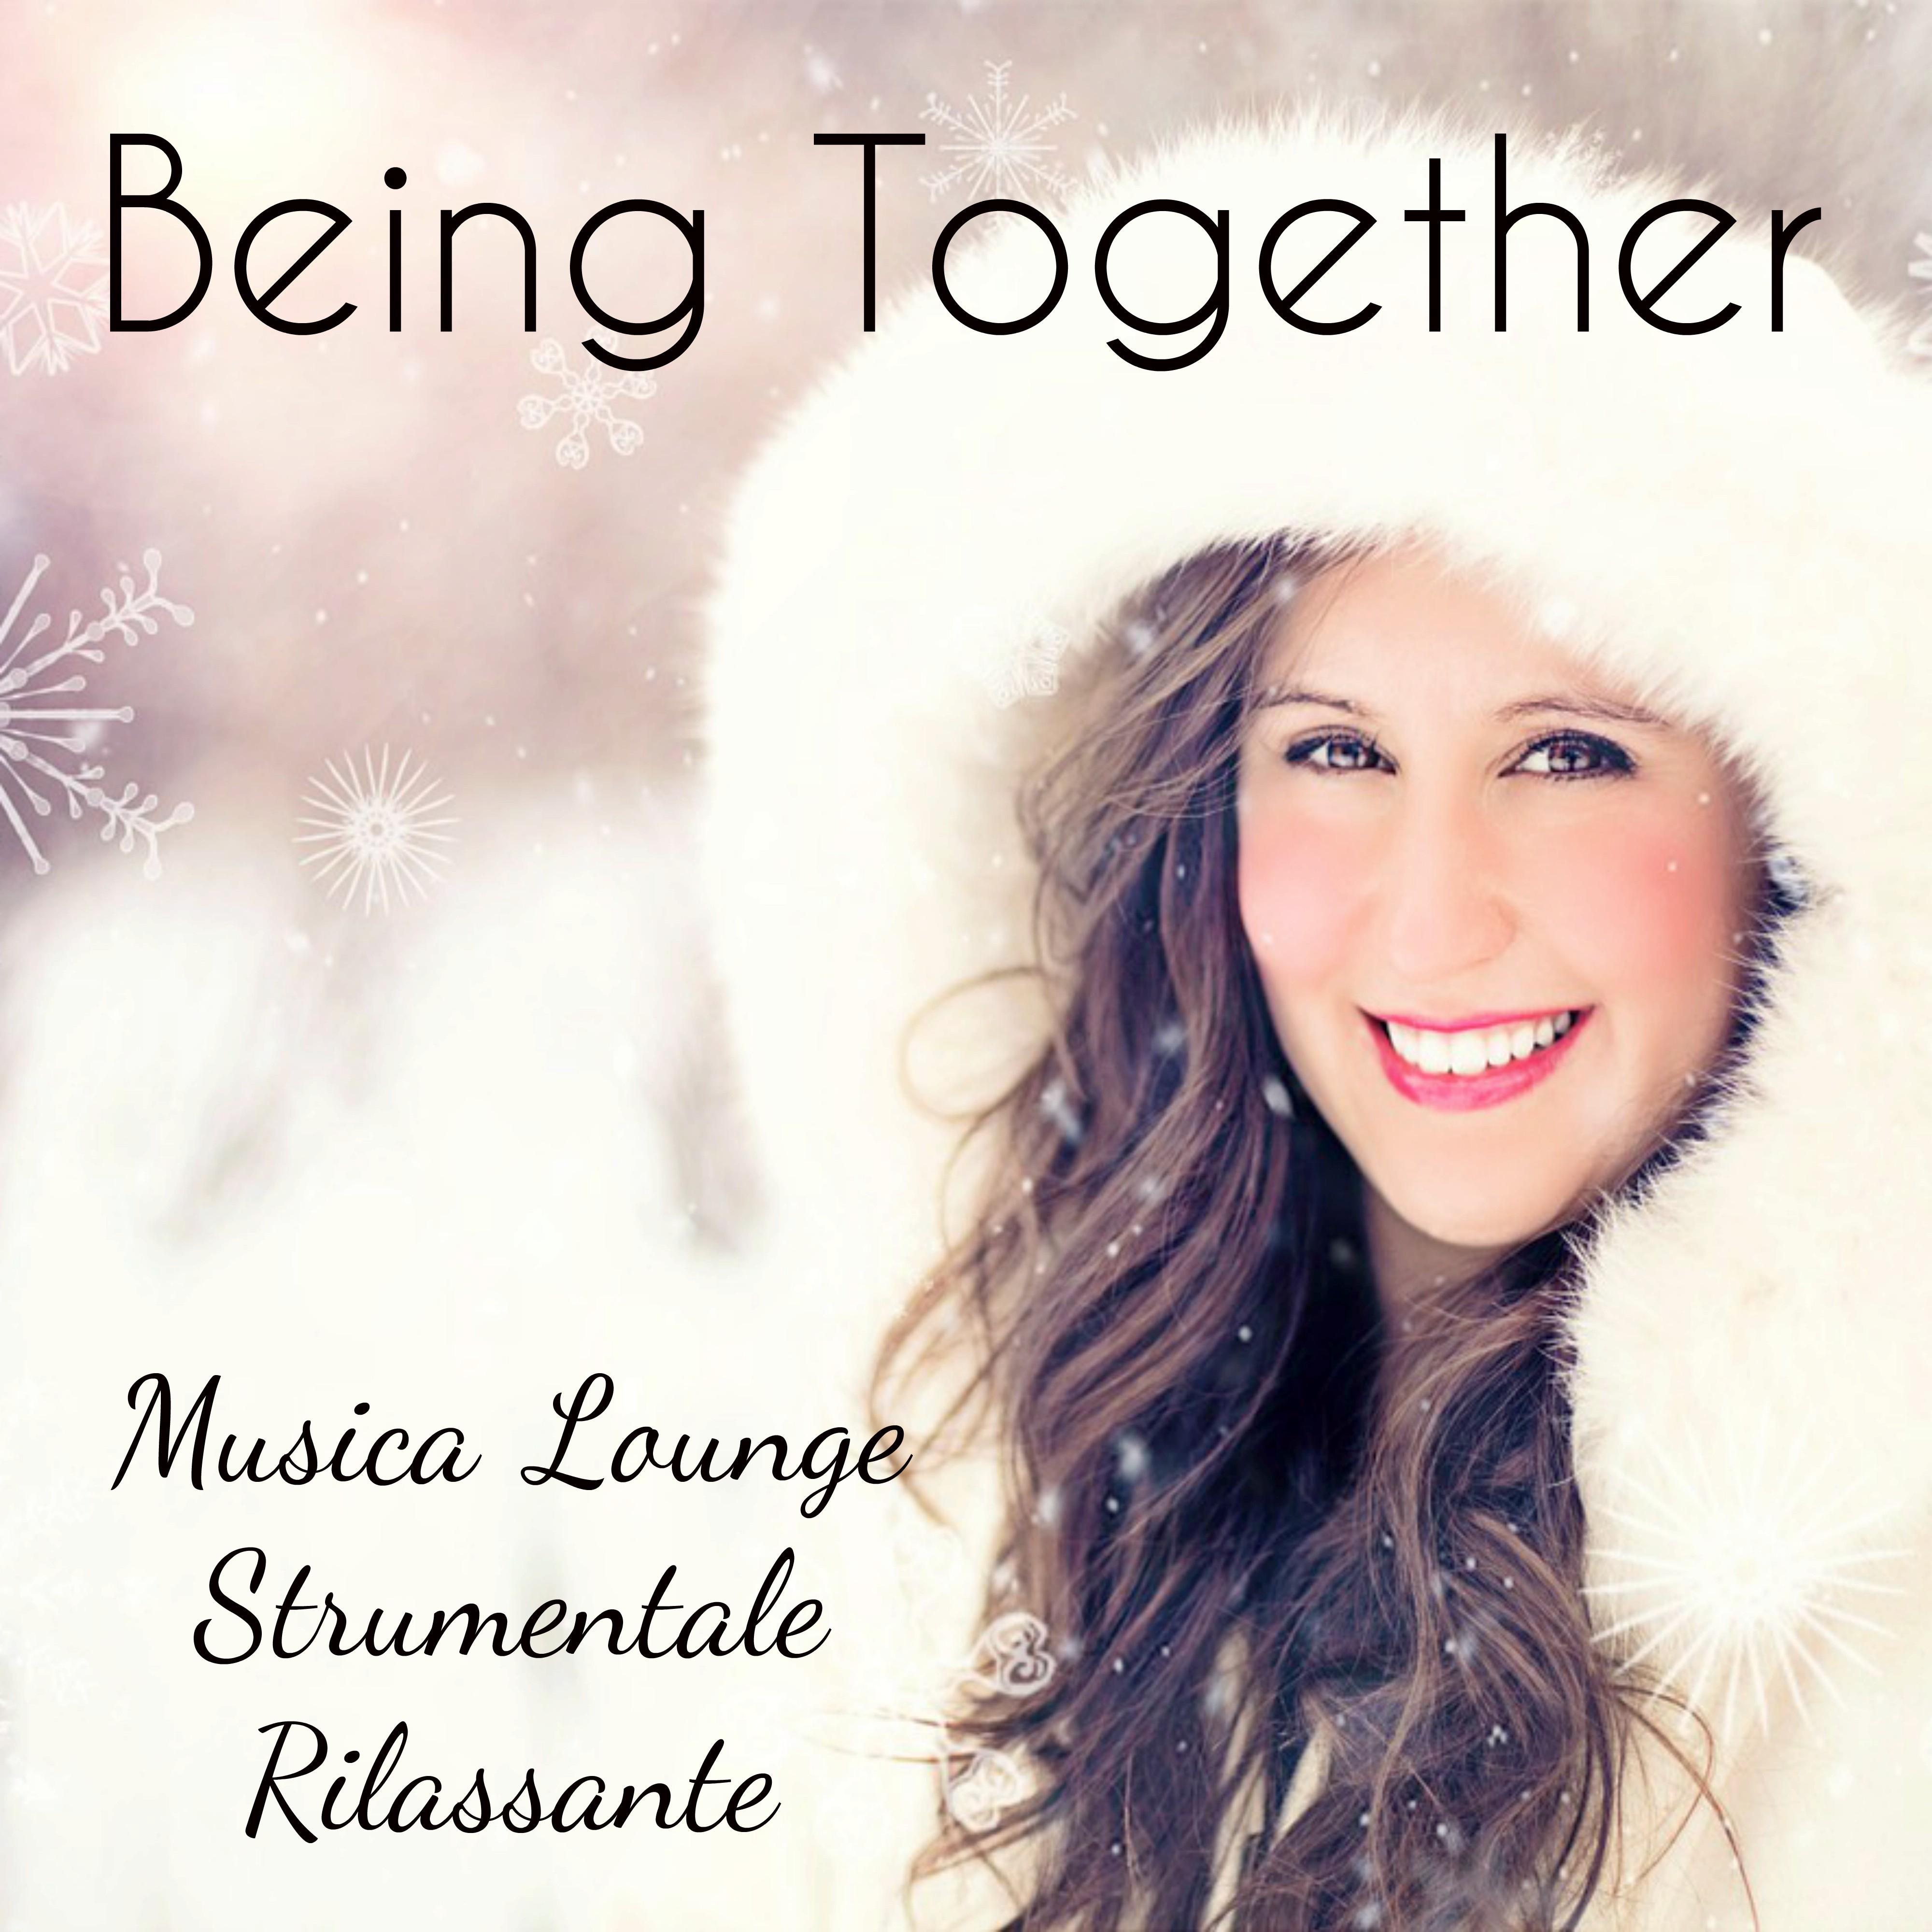 Being Together - Musica Lounge Strumentale Rilassante per Esercizi Meditazione Ridurre l'Ansia Auguri Natale con Suoni Easy Listening Soft Binaurali